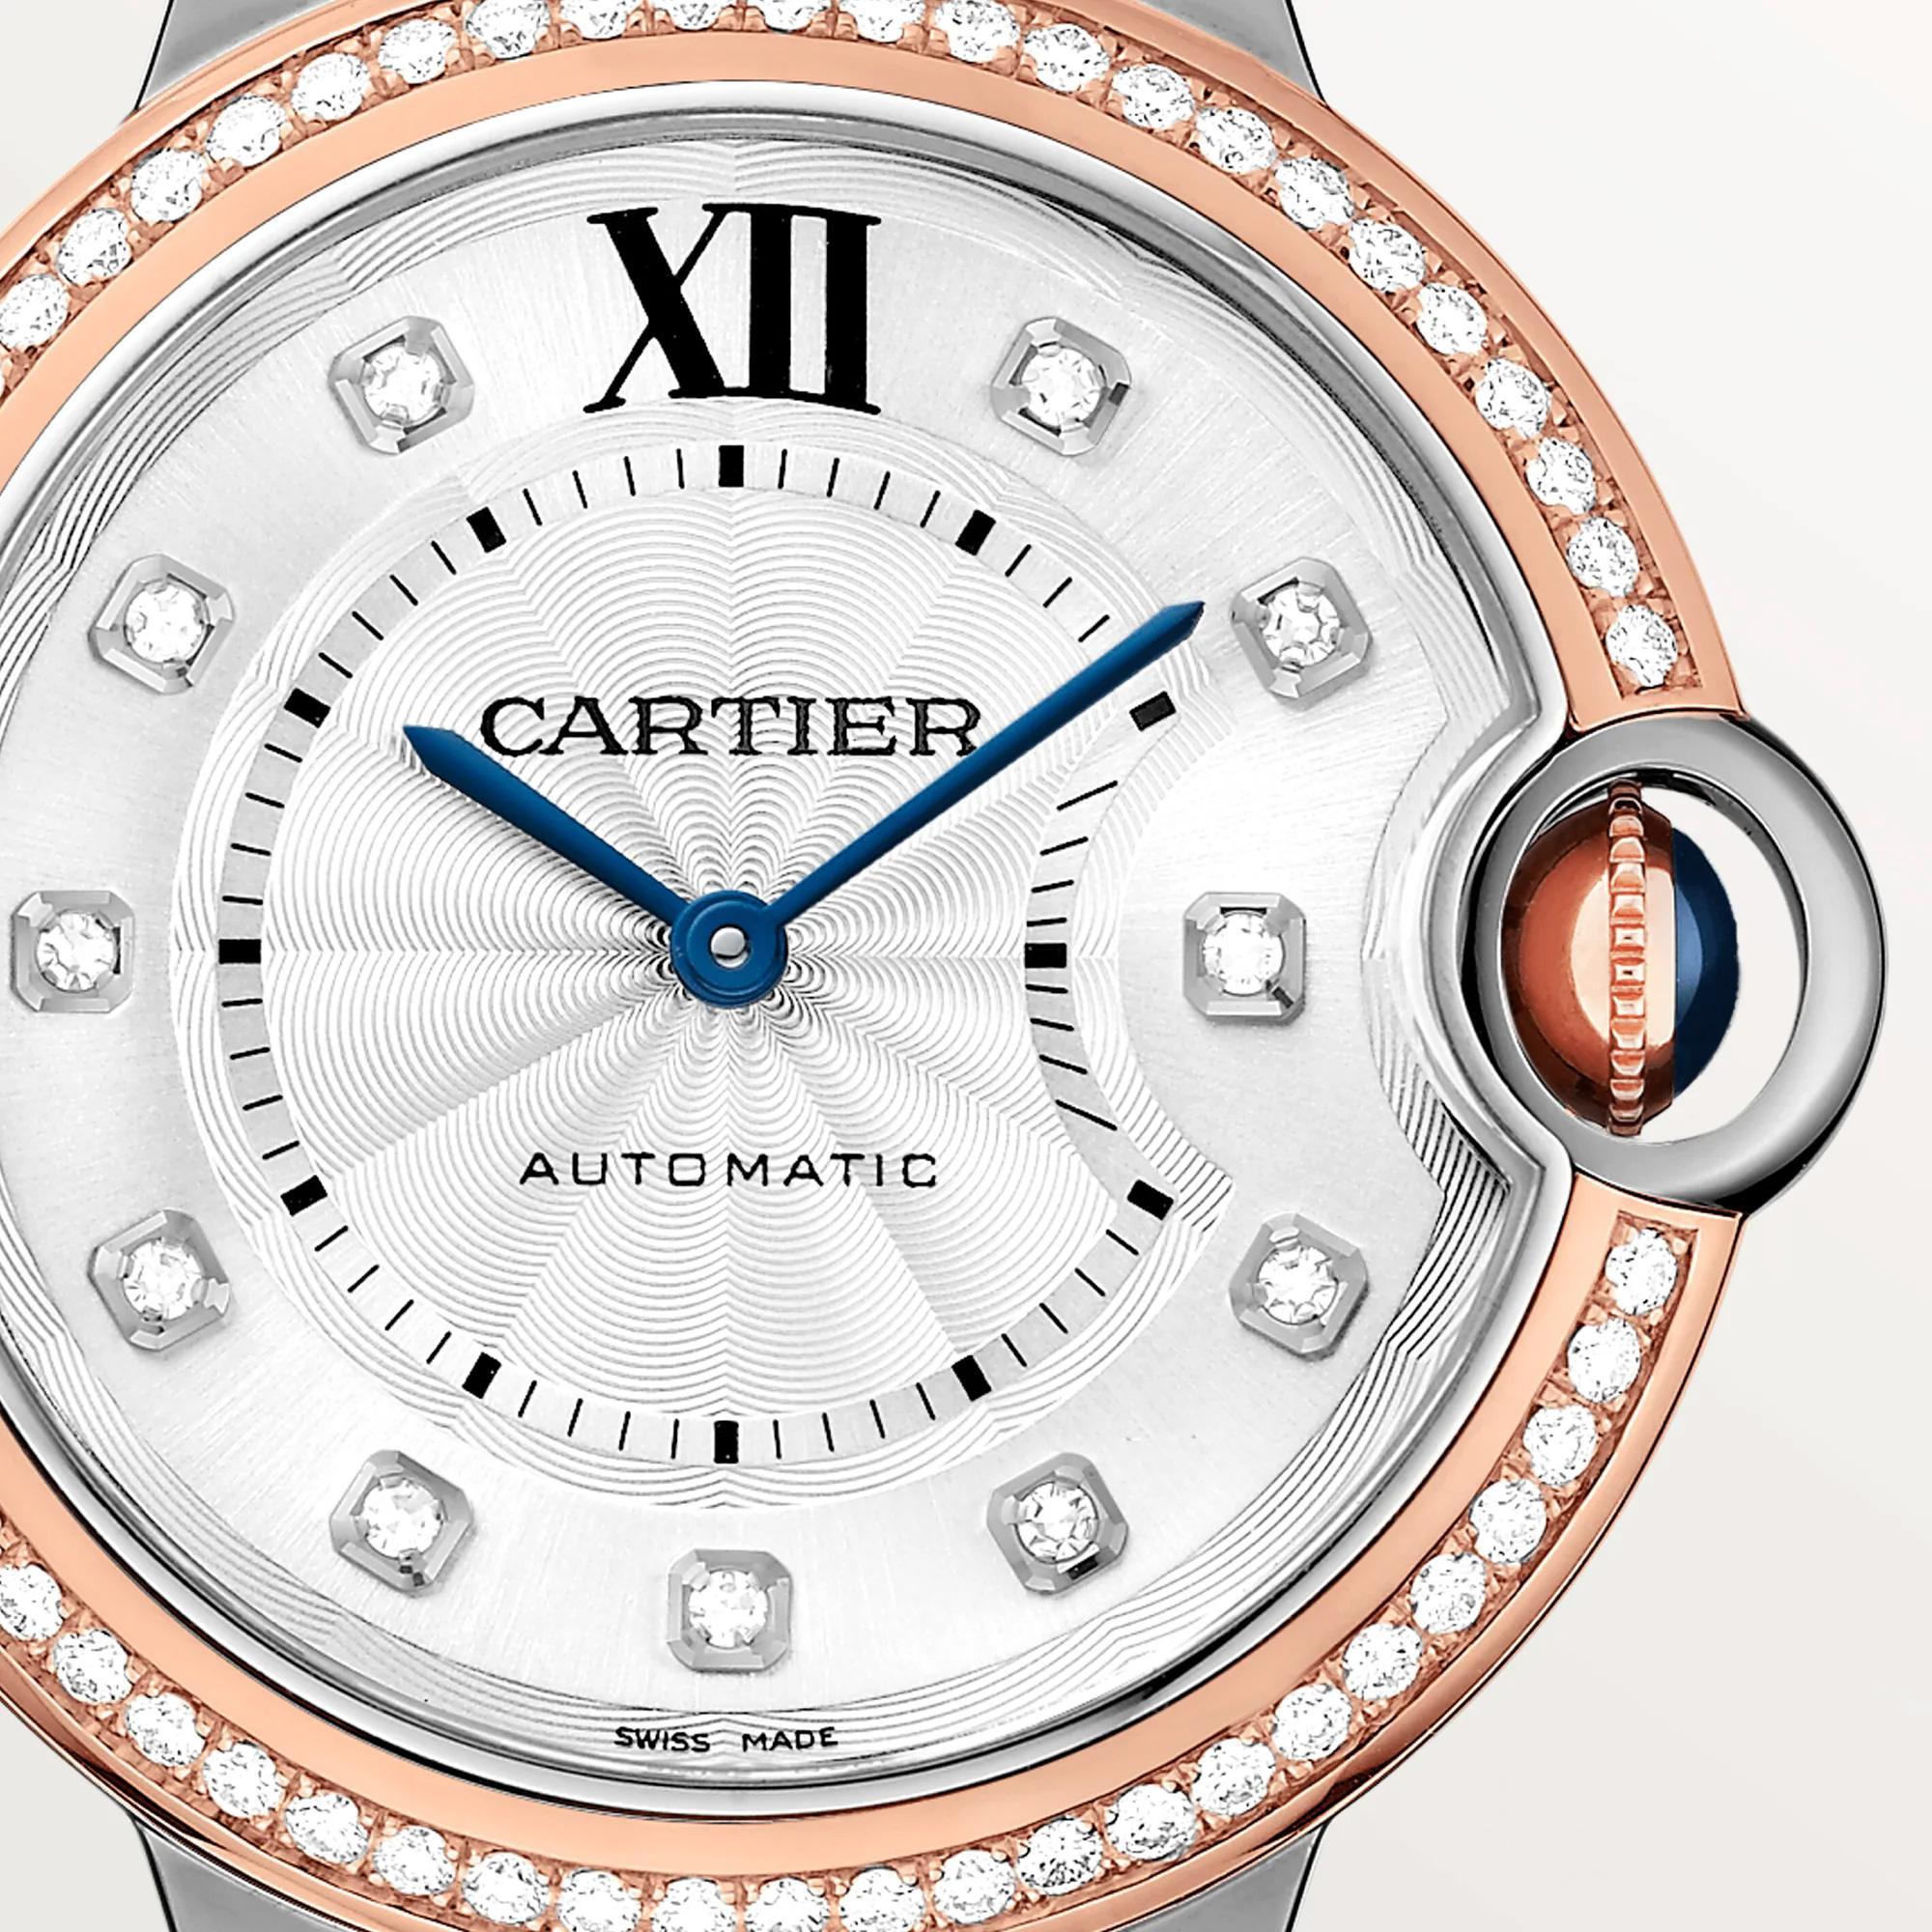 Ballon Bleu de Cartier Watch in Rose Gold with Diamonds, 36mm 1